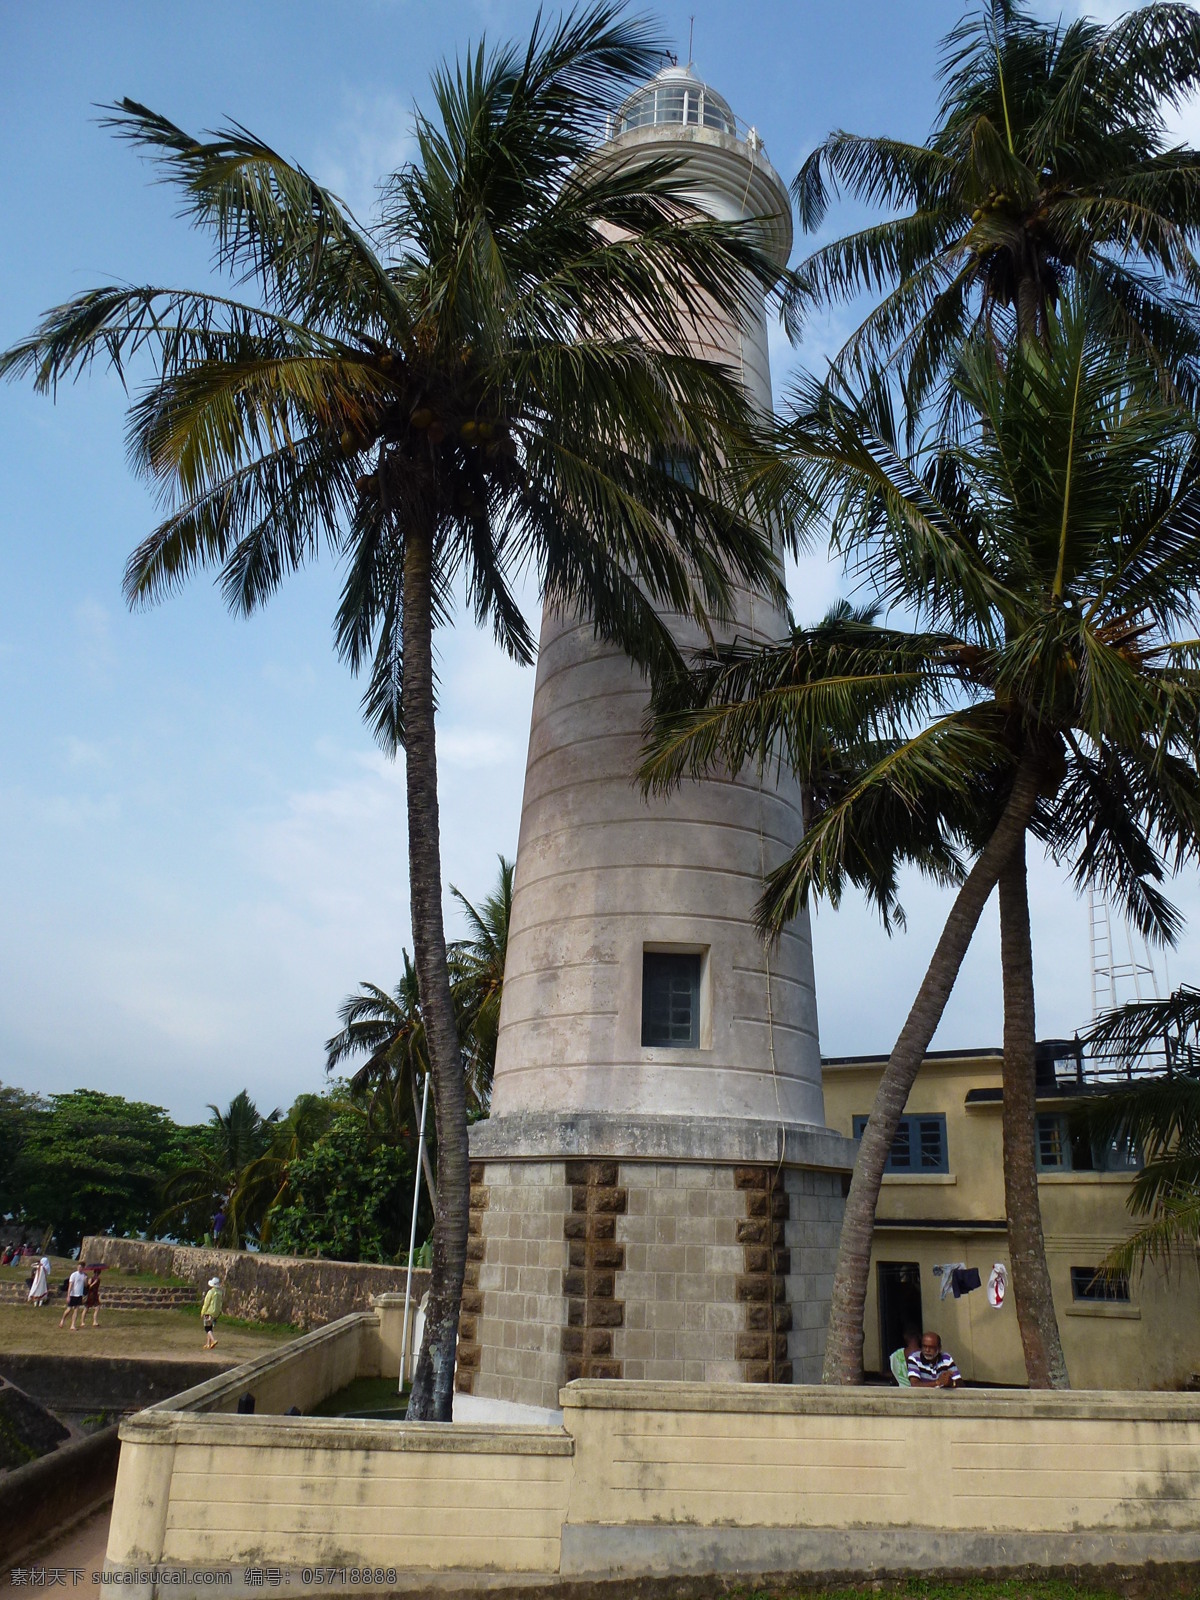 斯里兰卡风光 斯里兰卡 斯里兰卡风景 斯里兰卡街景 斯里兰卡建筑 斯里兰卡旅游 街道 建筑 外国建筑 异国风光 自然景观 风景名胜 黑色